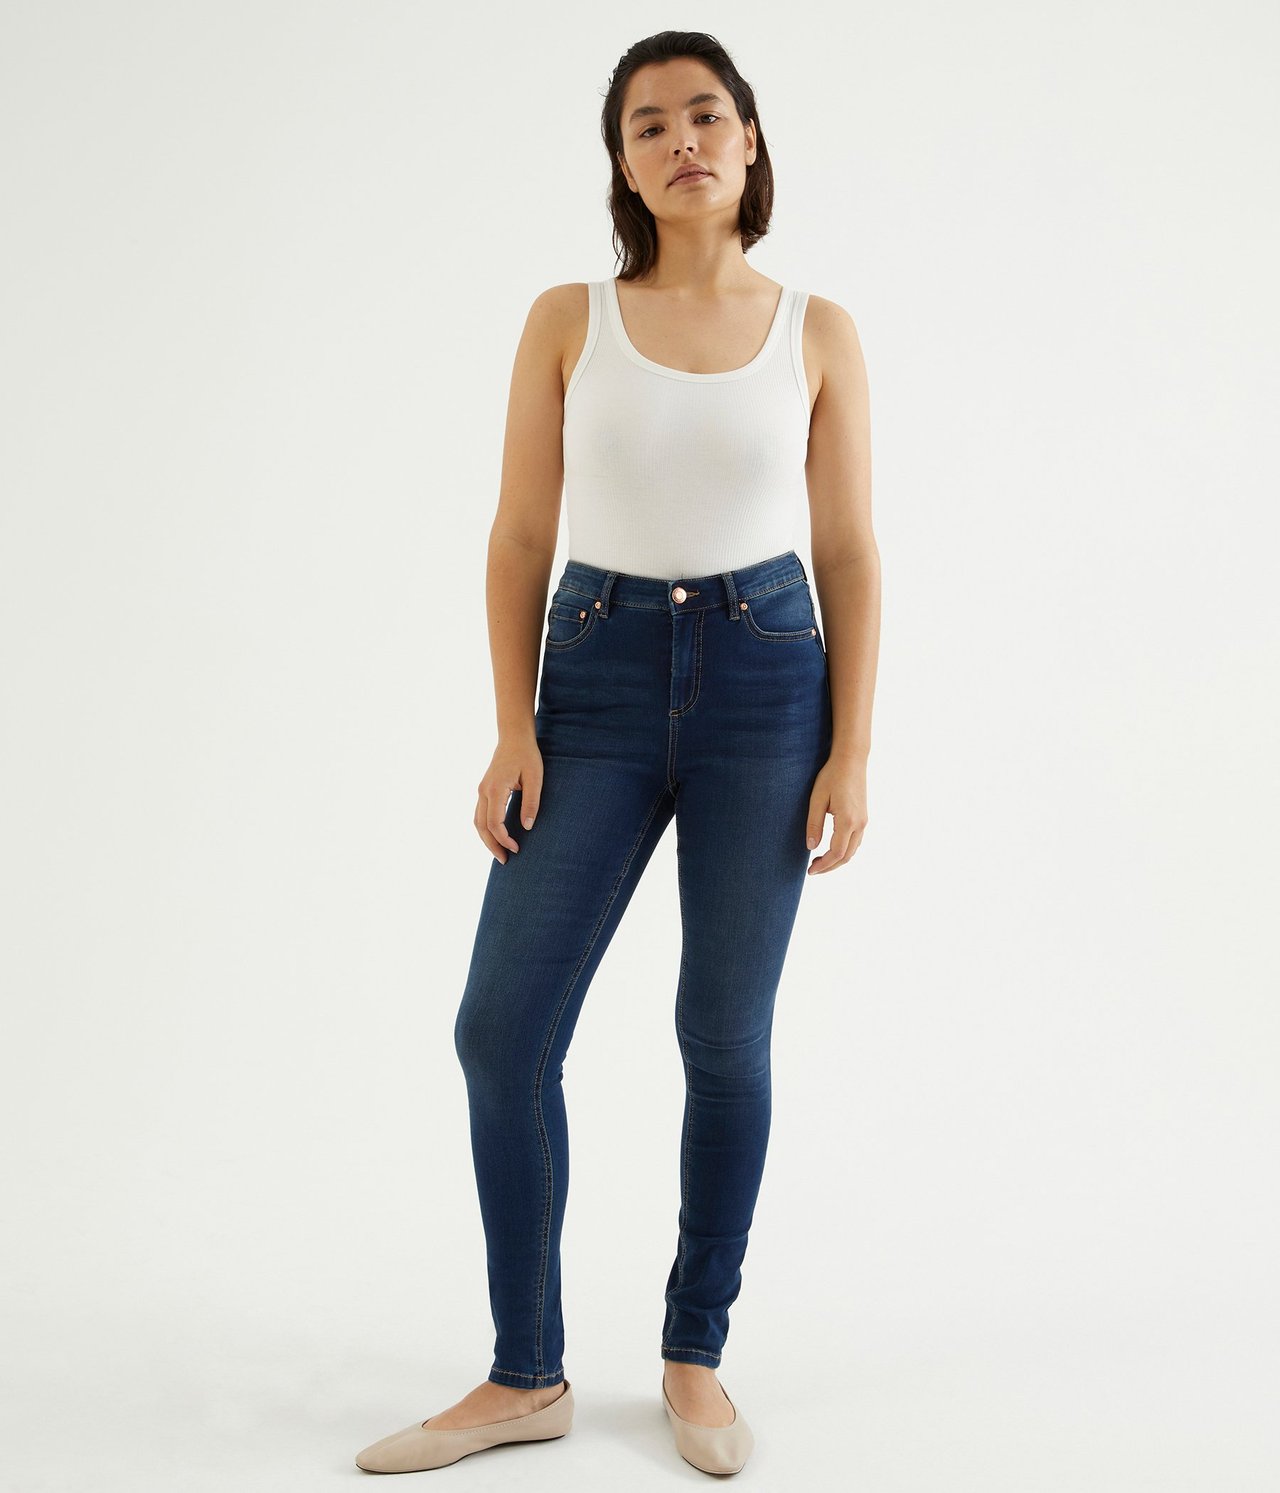 Super Slim Jeans High Waist - Mörk denim - 174cm / Storlek: 38 - 1